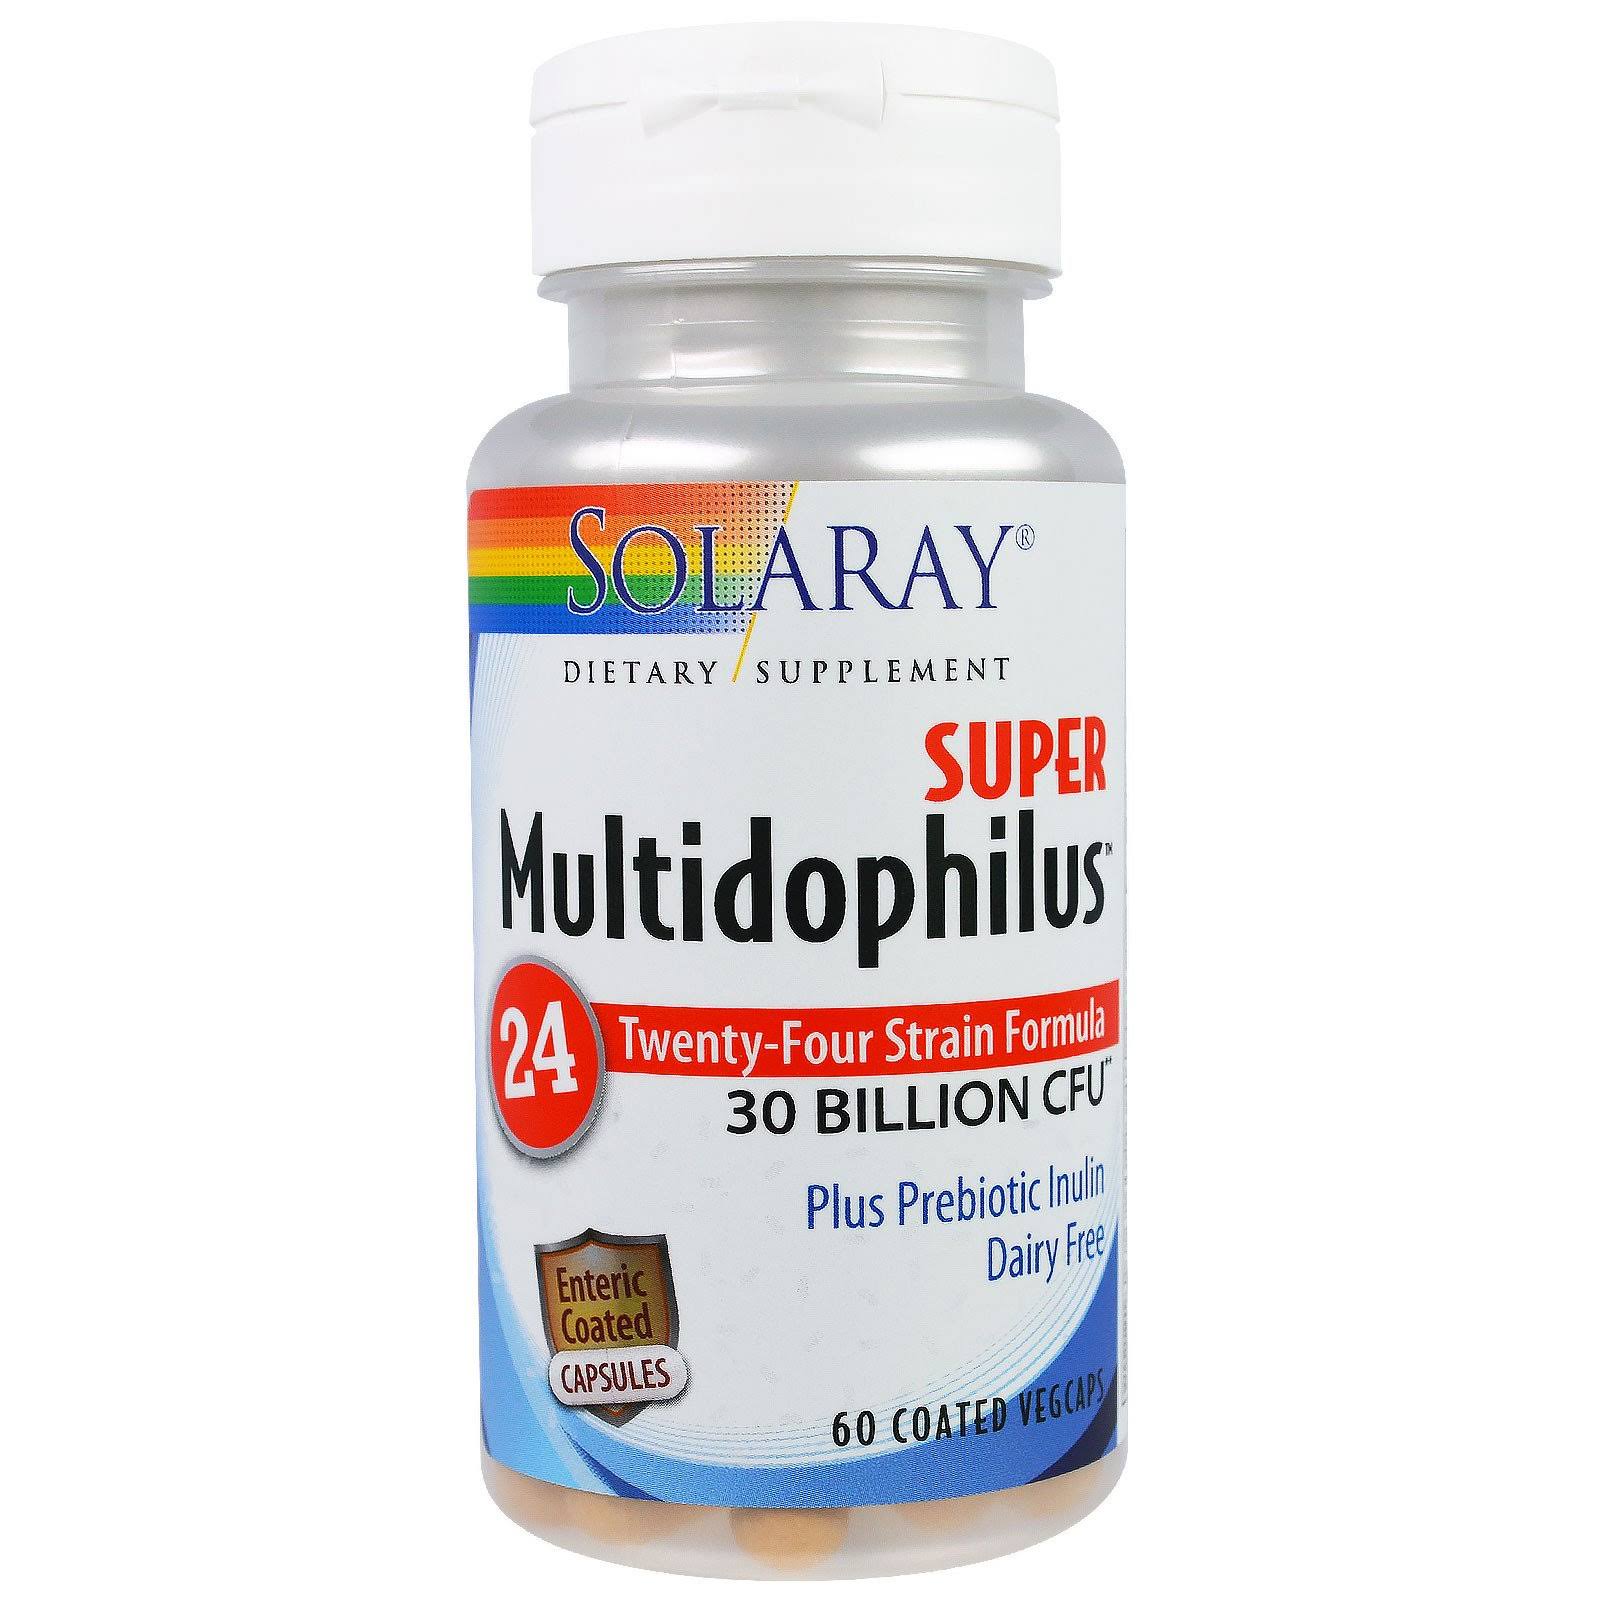 Solaray Super Multidophilus Dietary Supplement - 60 Vegetarian Capsule